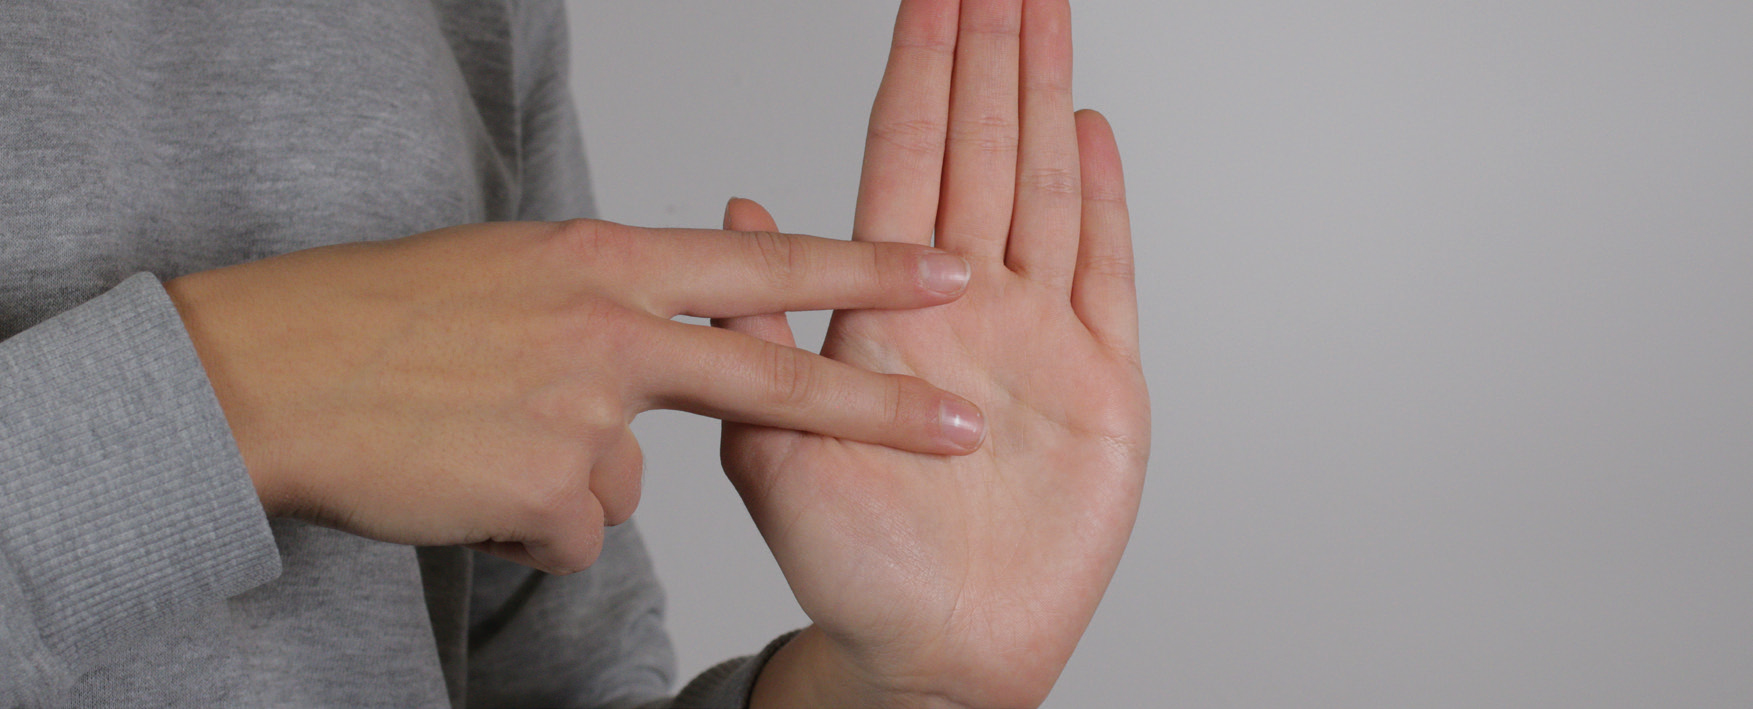 Gebärdensprache (DGS) mit Fingeralphabet